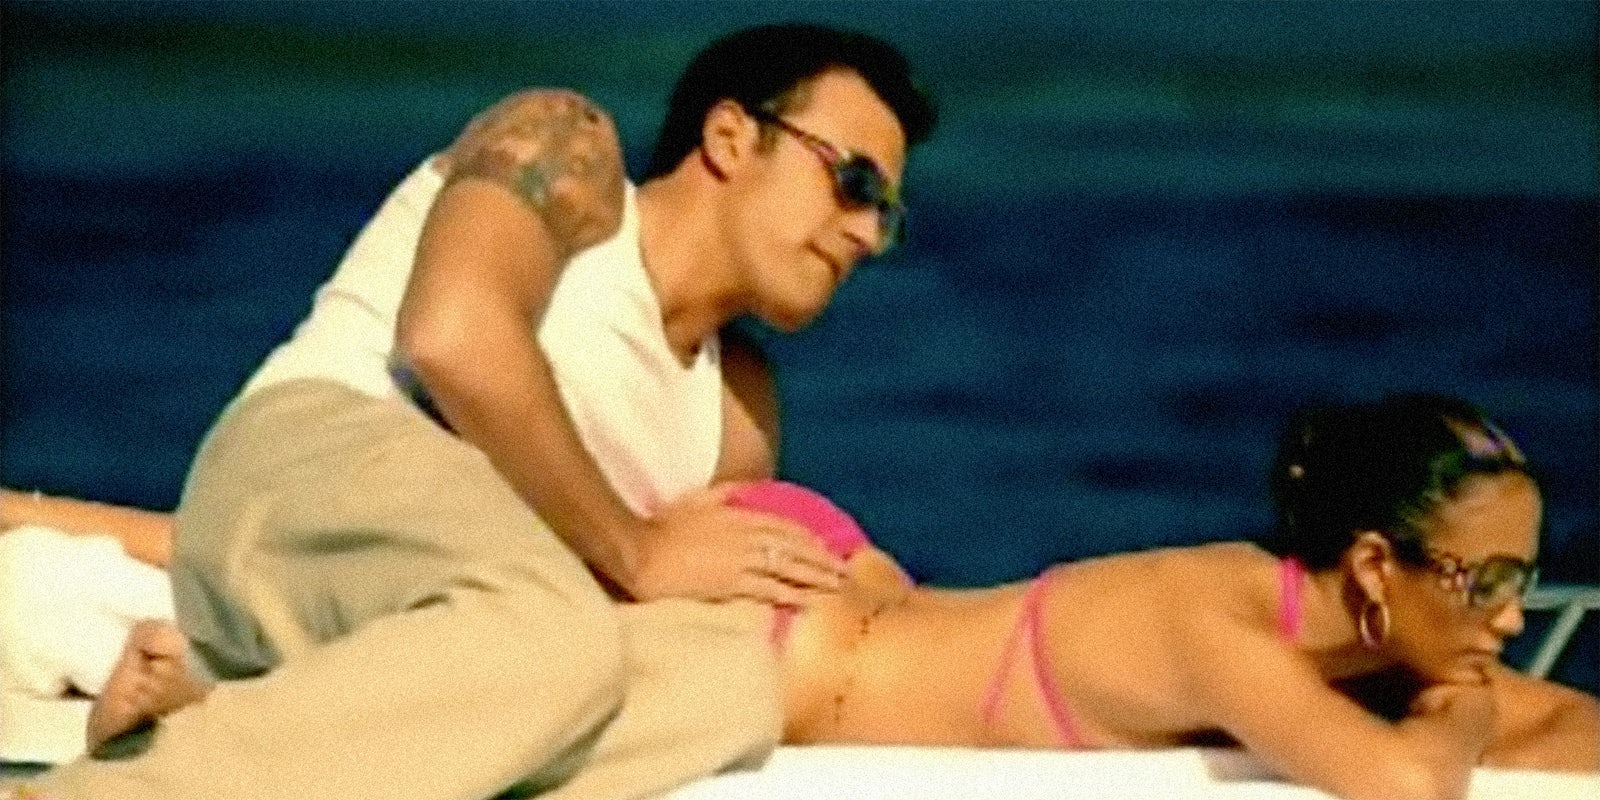 Ben Affleck and Jennifer Lopez on a boat.